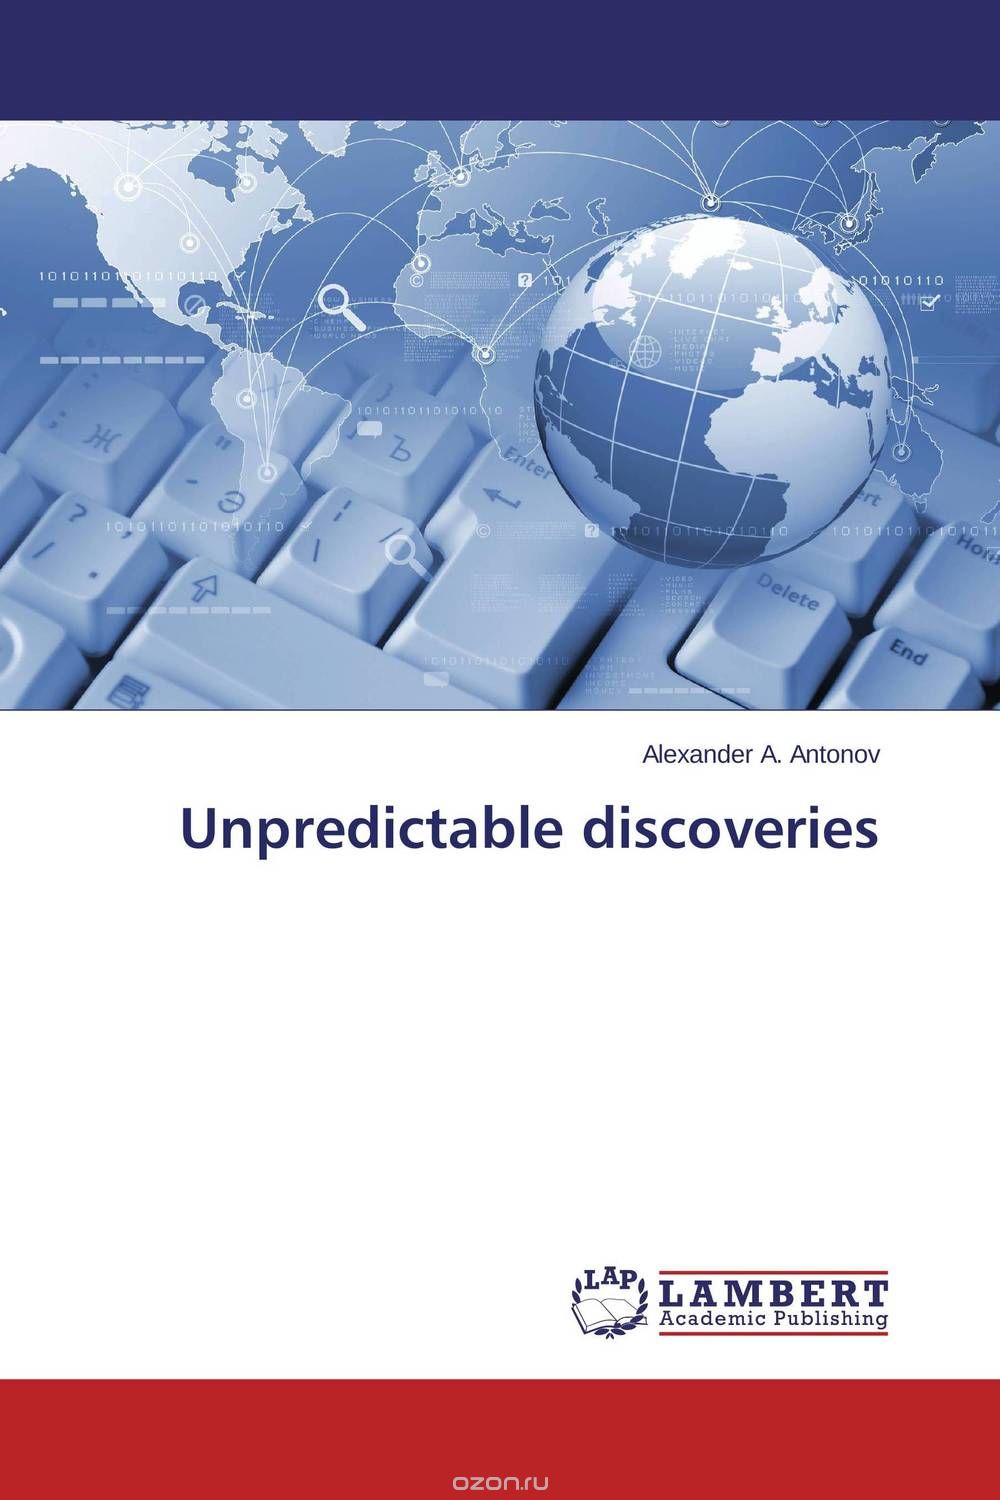 Скачать книгу "Unpredictable discoveries"